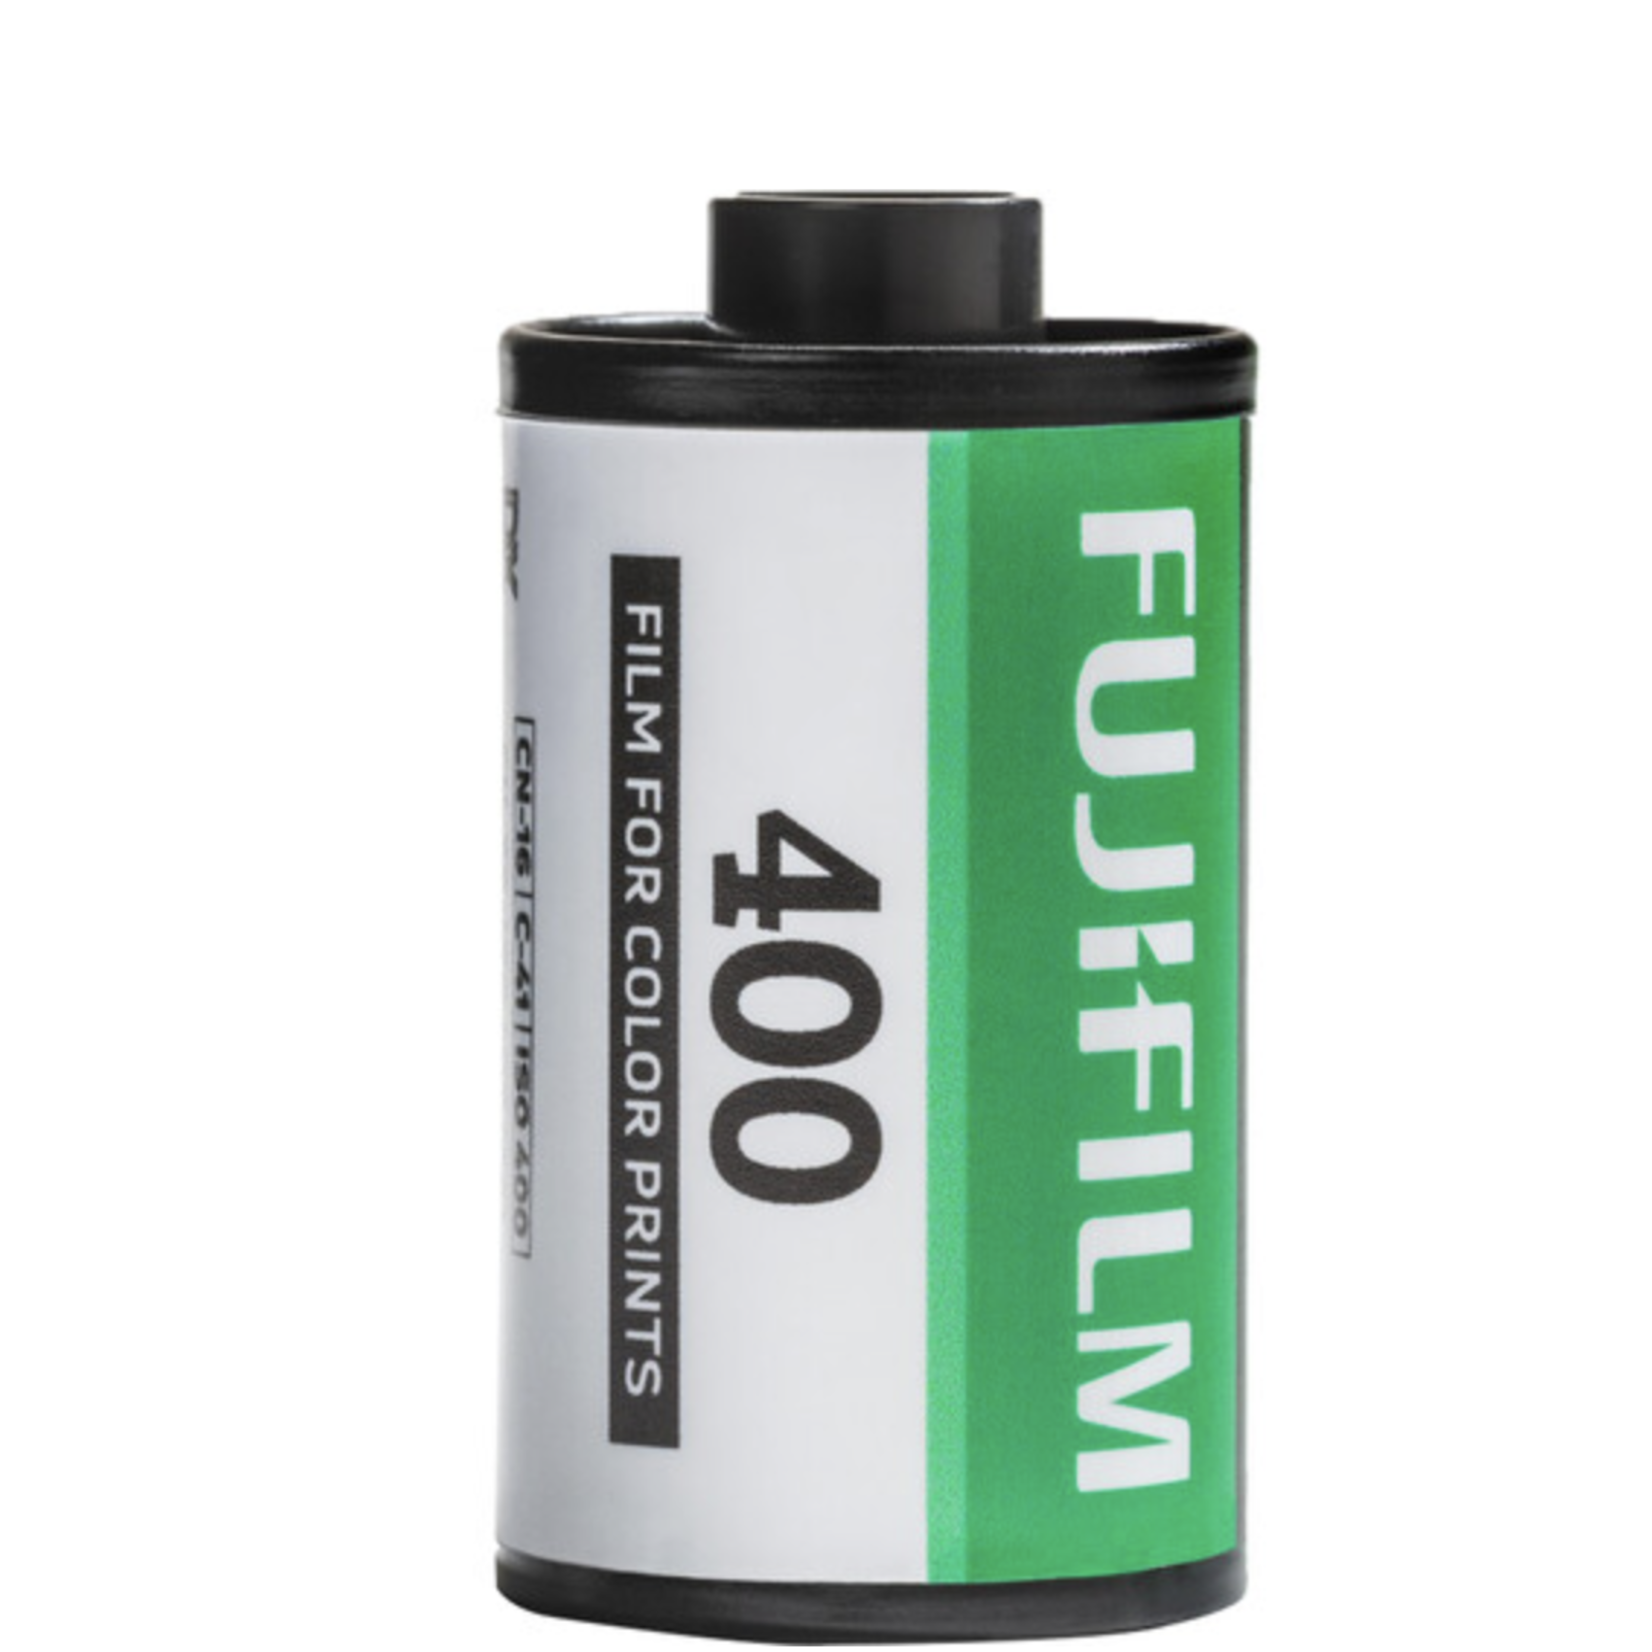 FujiFilm FUJIFILM 400 Color Negative Film (35mm, 36 Exposures)